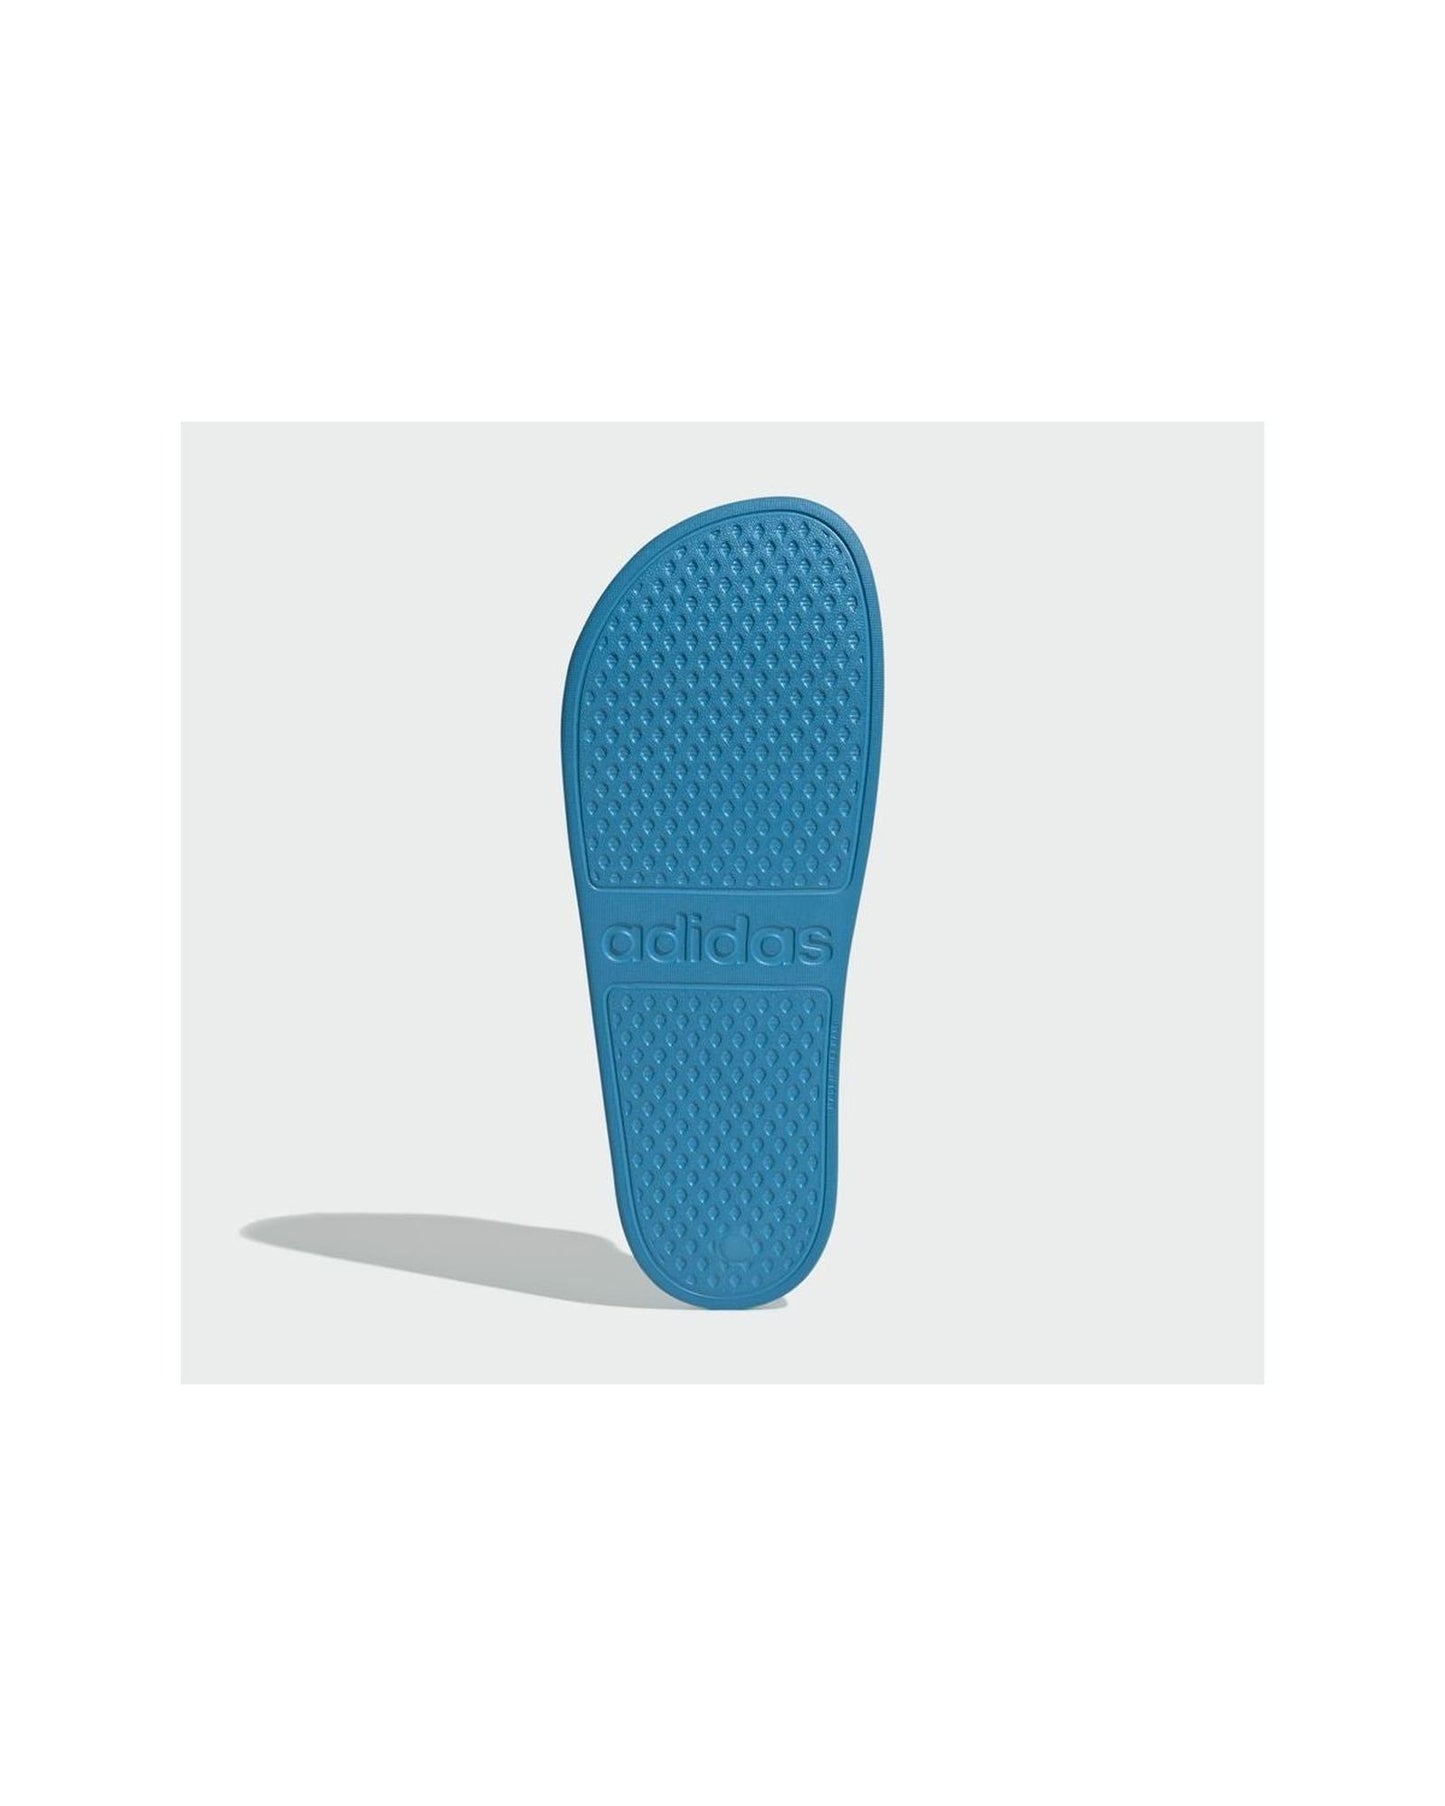 Blue/White Adidas Slides with Cloudfoam Cushioning - 6 US